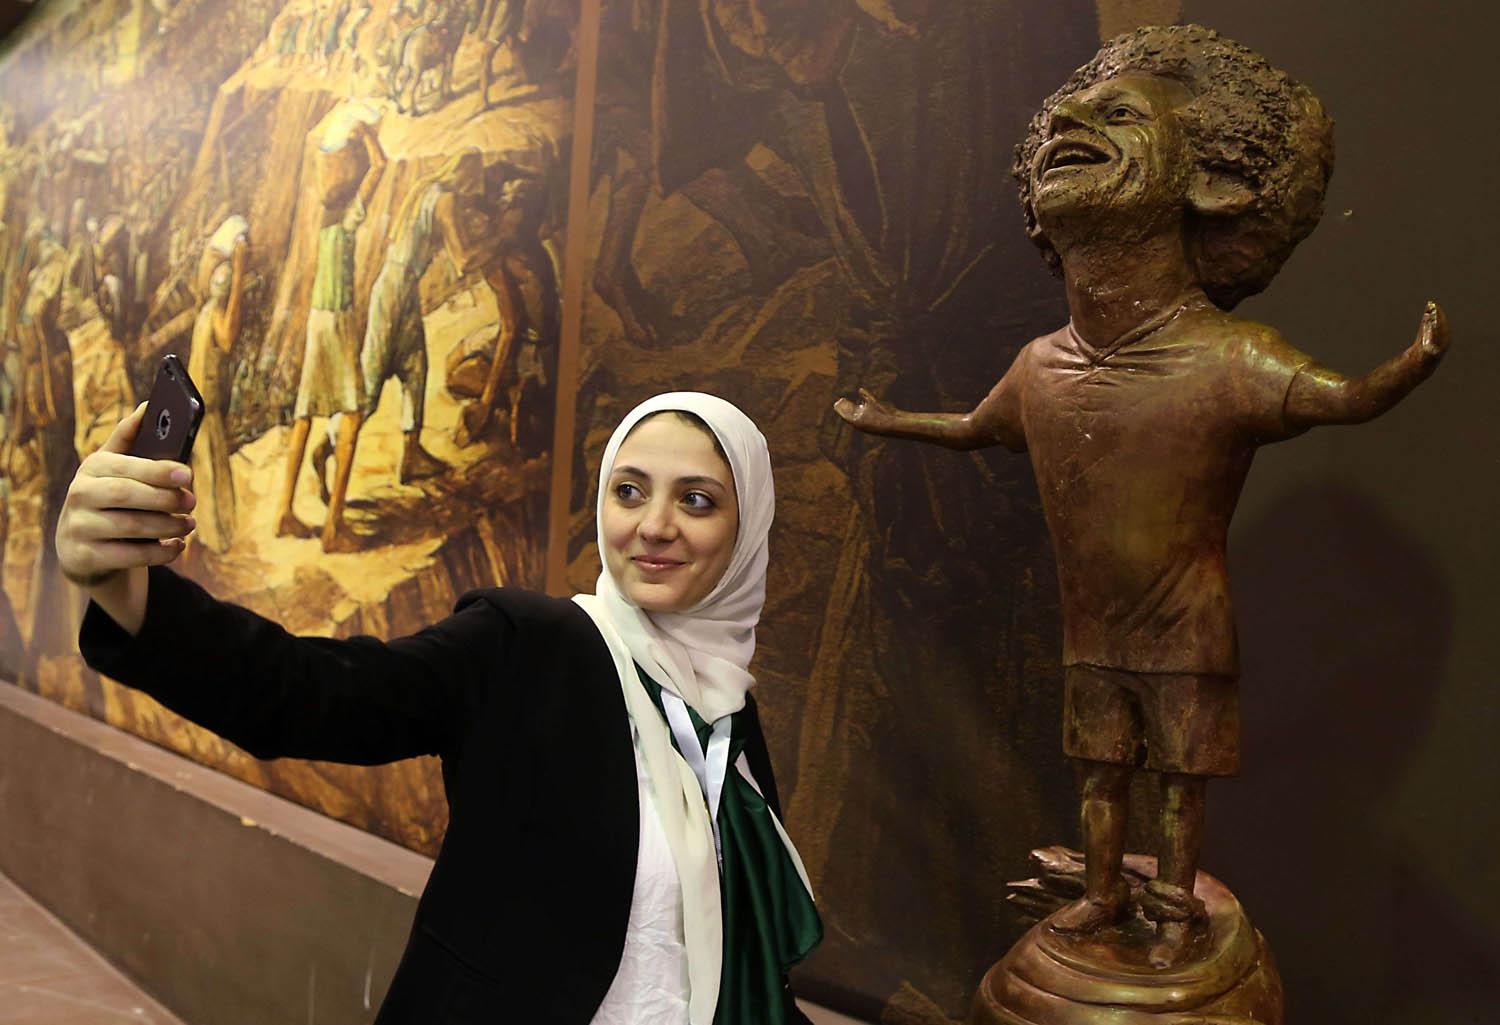 مصرية تأخذ صورة مع تمثال للاعب محمد صلاح في مندى للشباب في شرم الشيخ بمصر